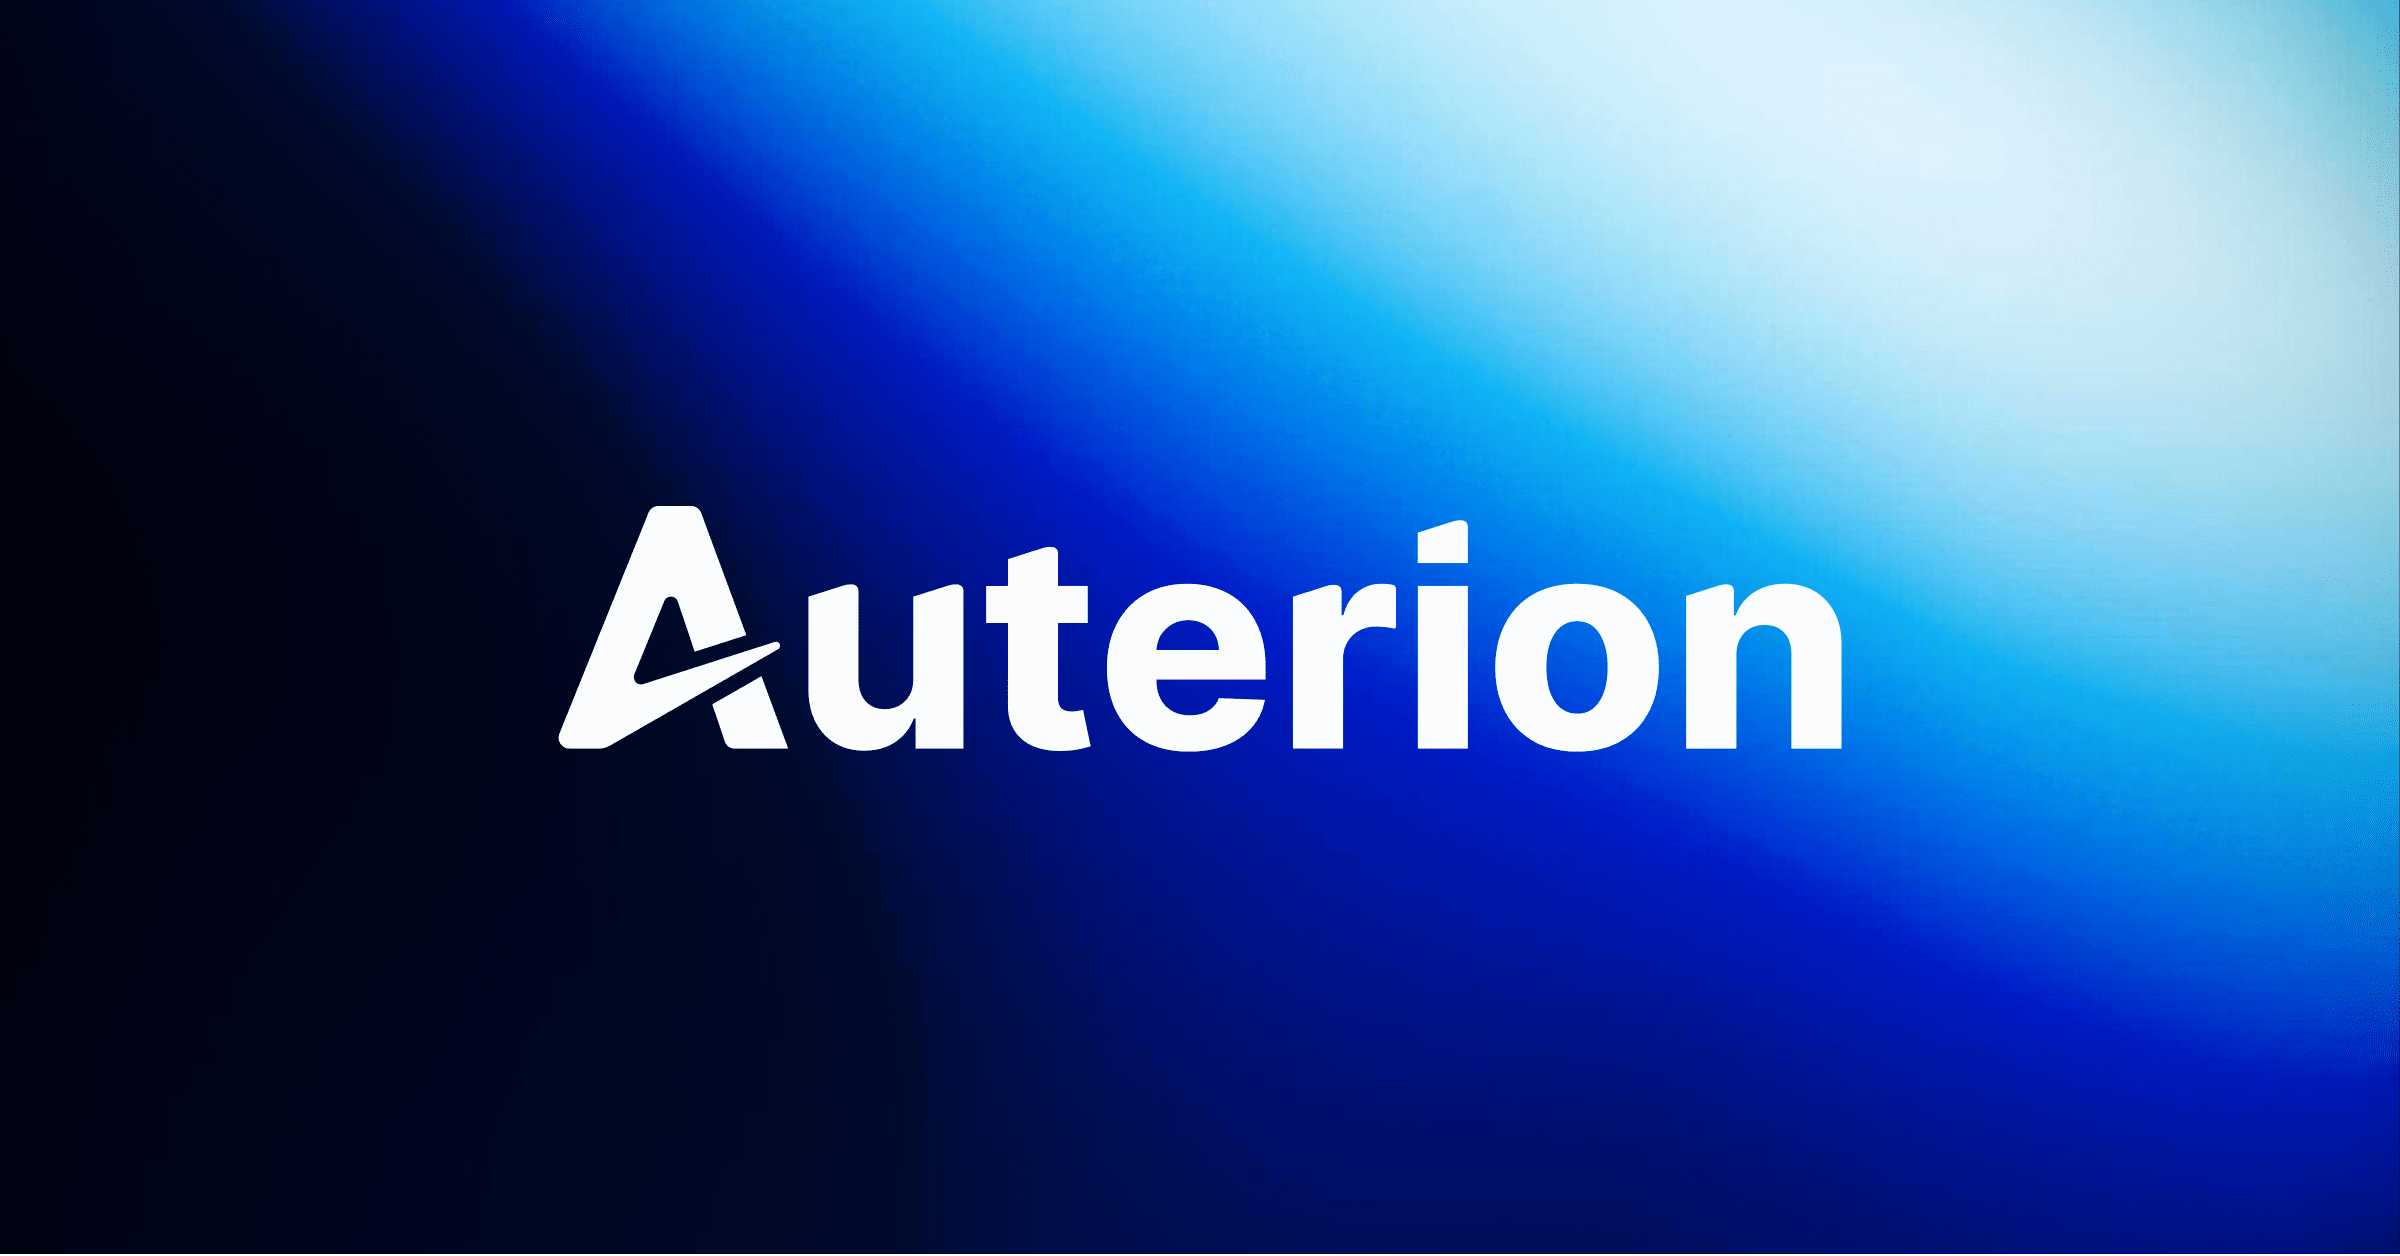 (c) Auterion.com